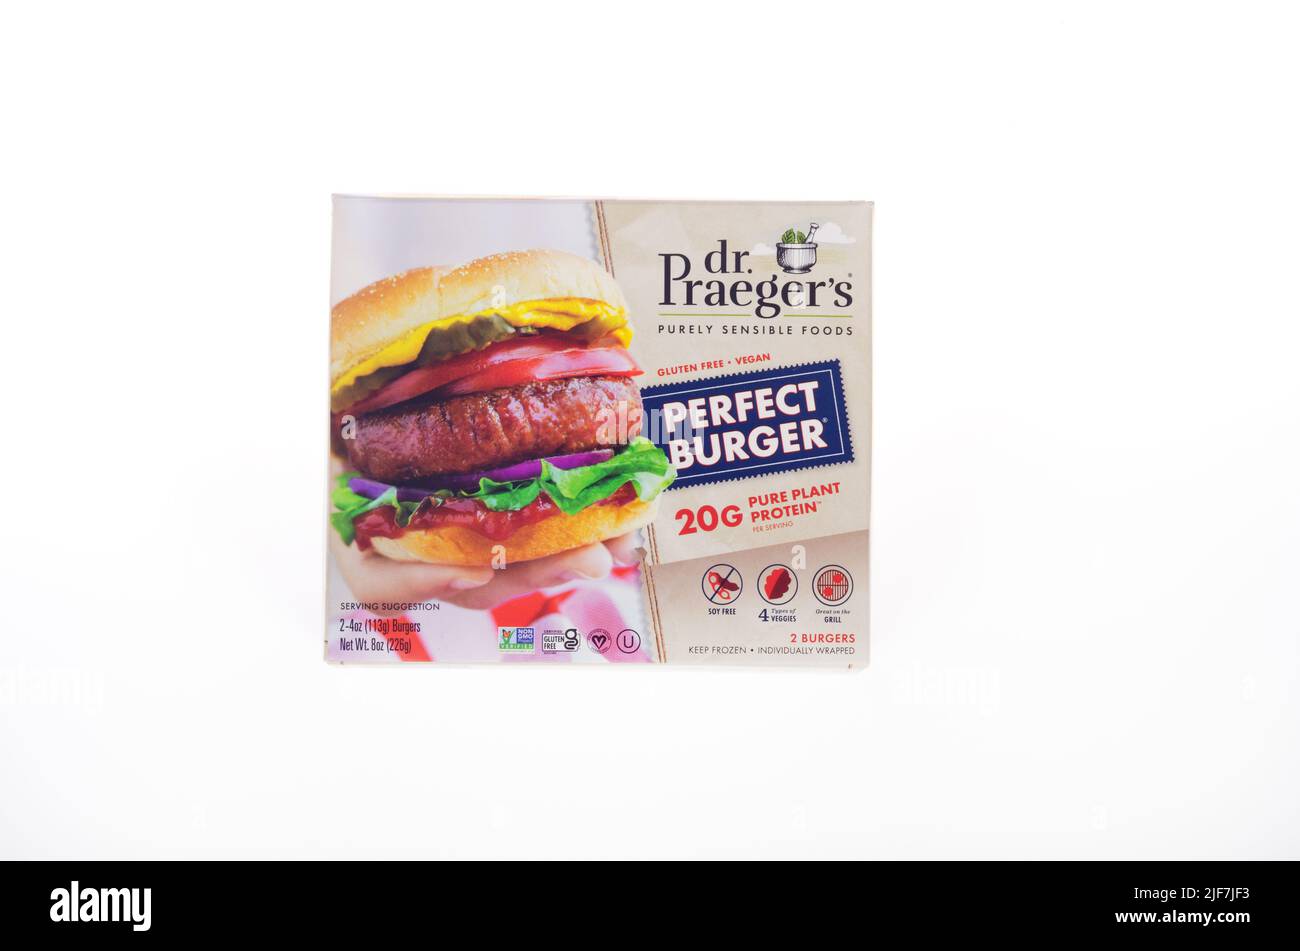 Caja de Dr. Praegers Perfect Burger hecho sin gluten, vegano, vegetariano, no-gmo, sin soja y 20 gramos de proteína vegetal por porción. Foto de stock